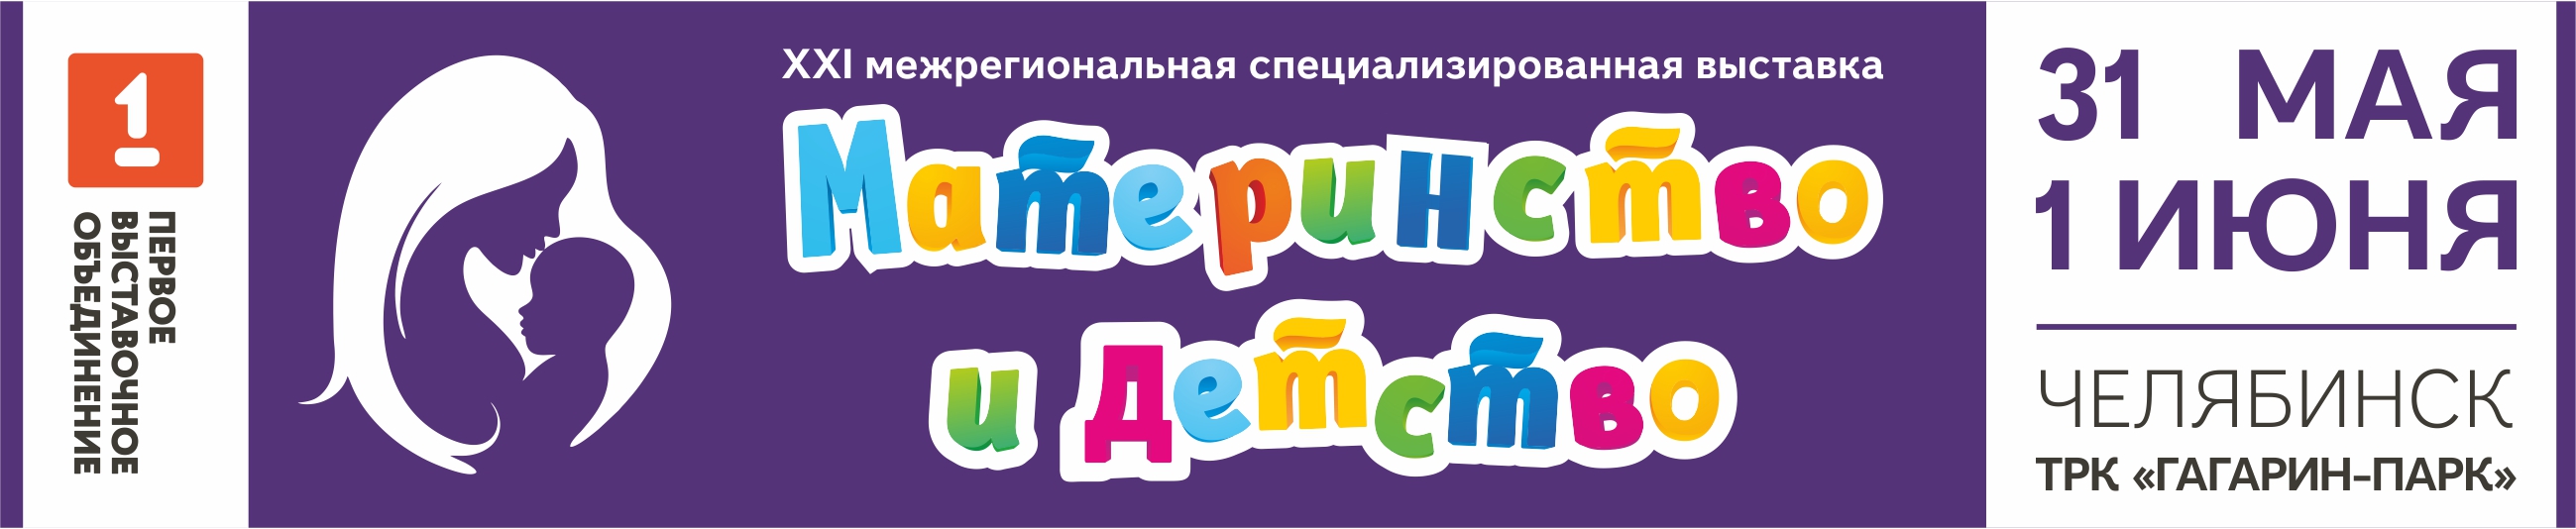 XXI Межрегиональная выставка-продажа "Материнство и детство", Челябинск